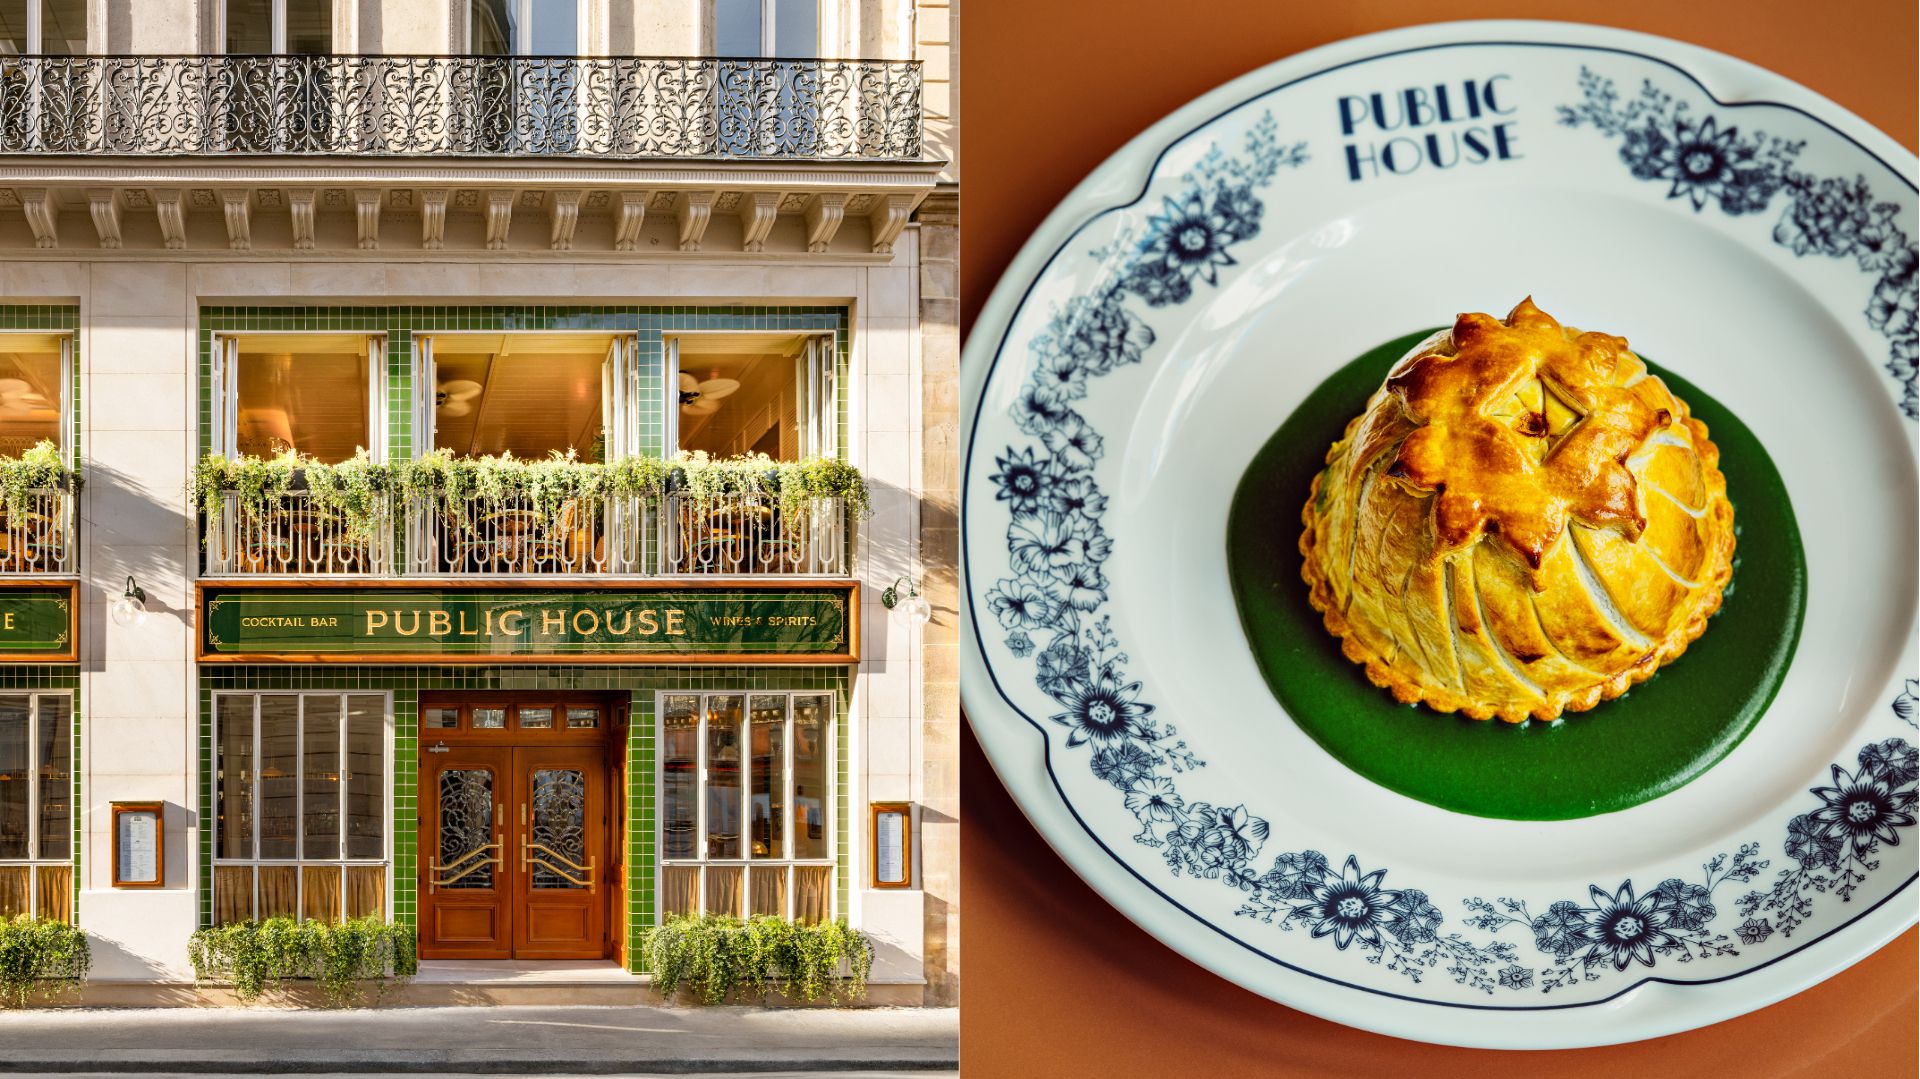 Fish and chips, pies, scones: la gastronomie anglaise prend sa revanche à Paris